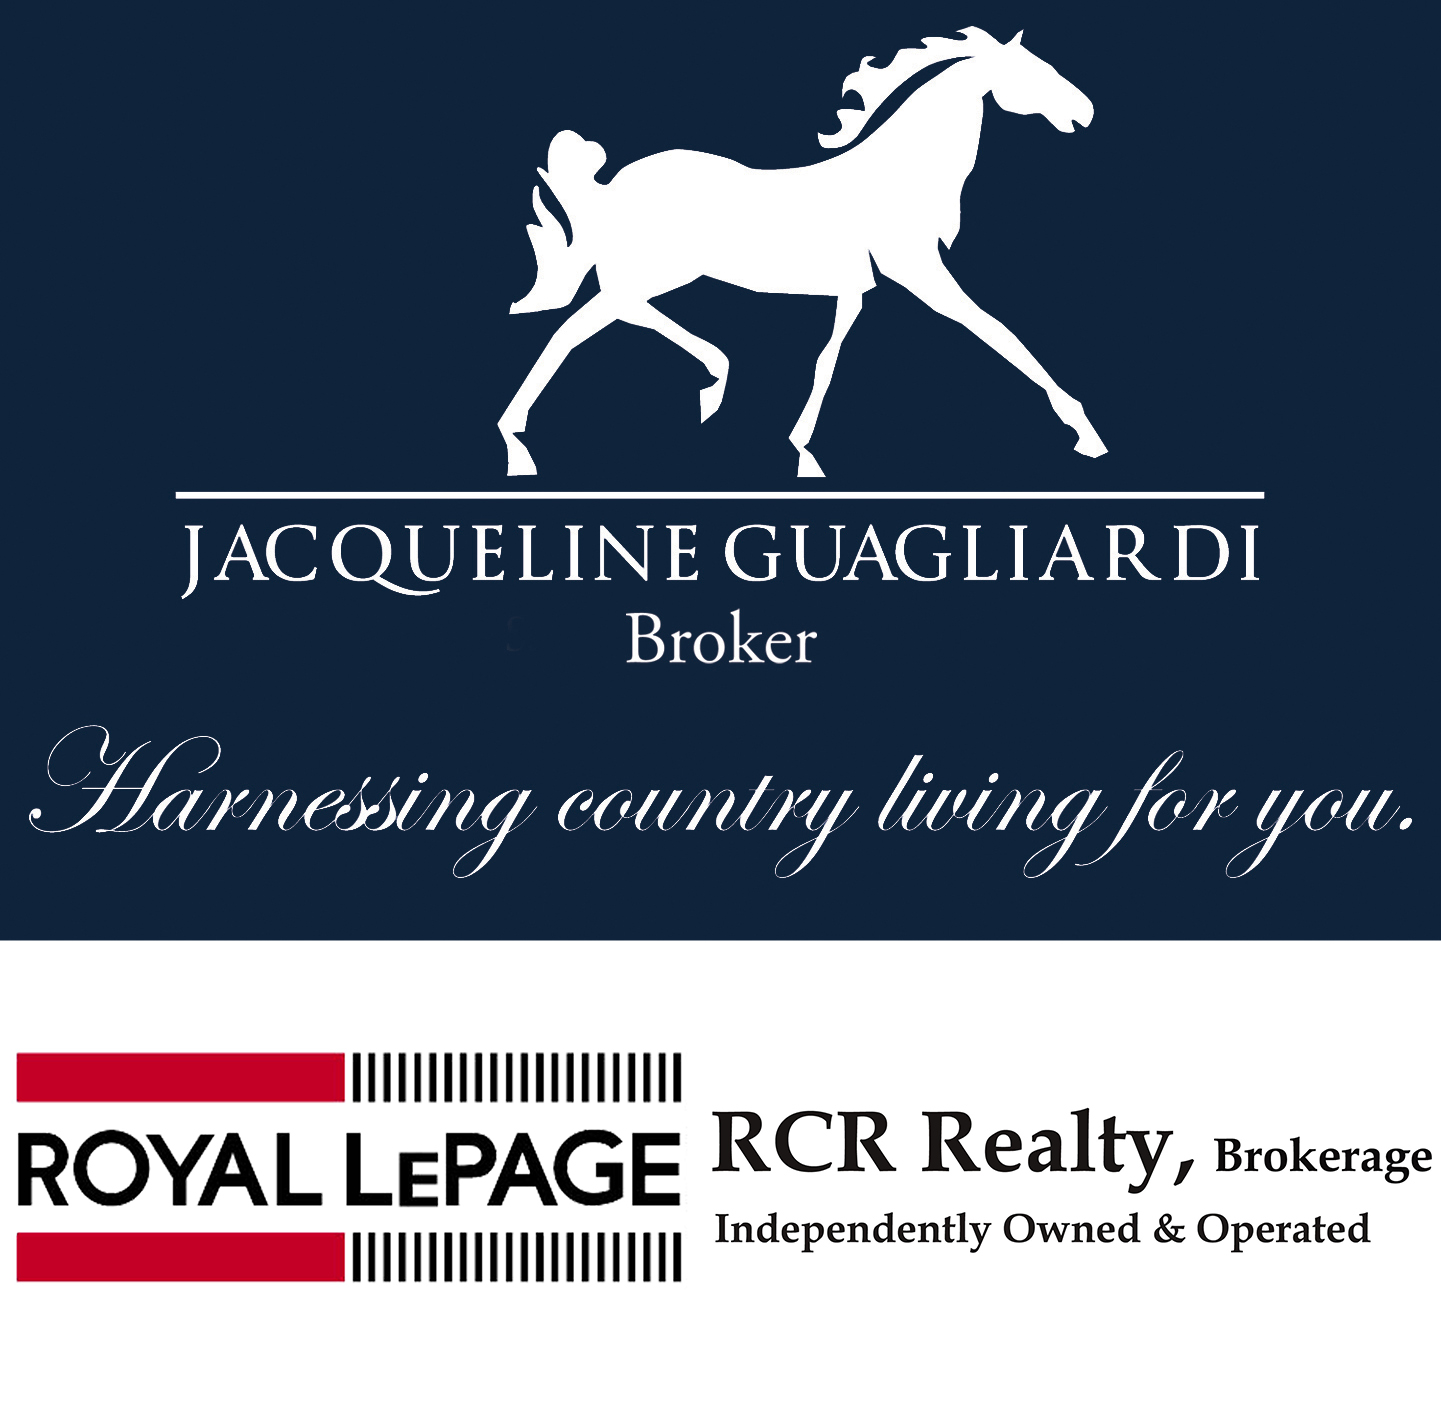 Royal LePage RCR Realty, Brokerage